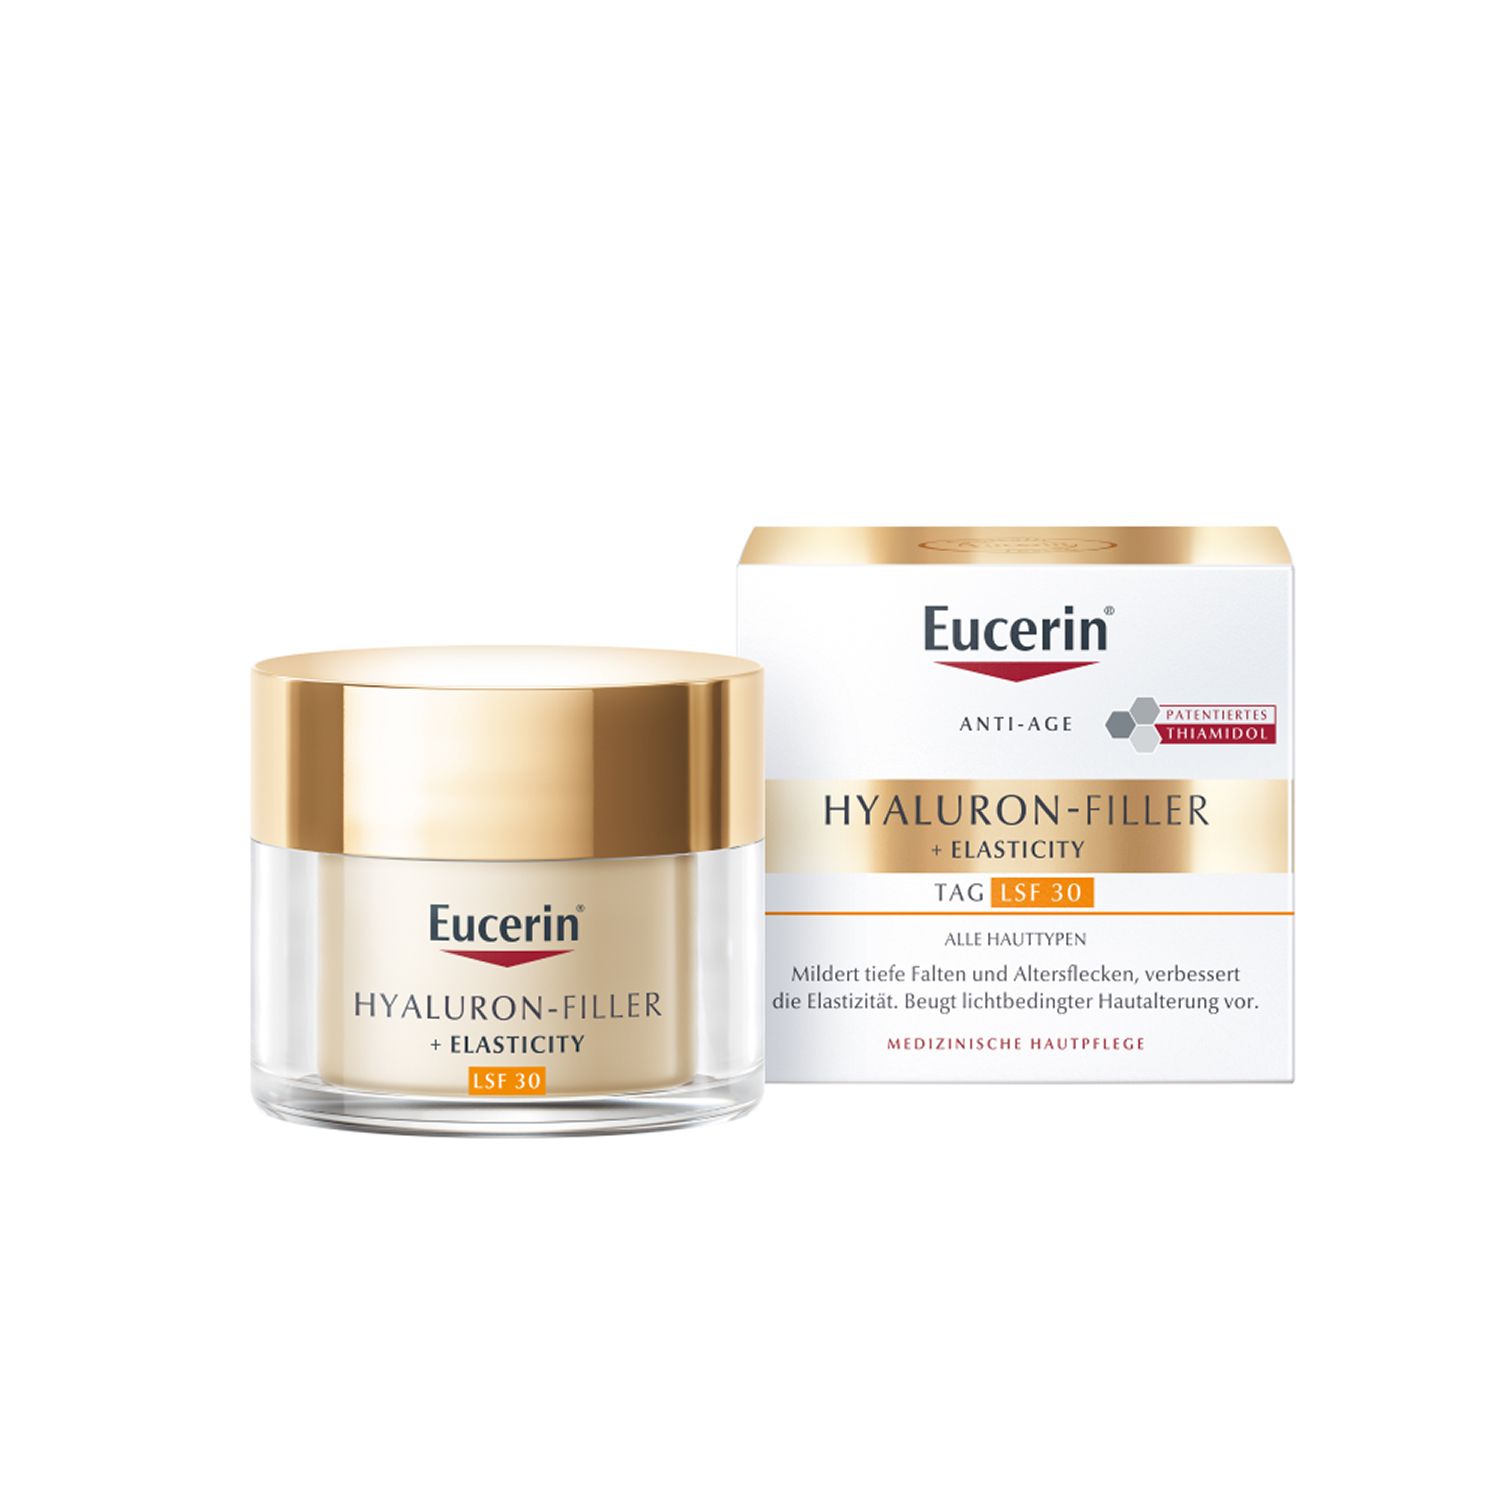 Eucerin HYALURON-FILLER + ELASTICITY Tagespflege LSF 30 + Eucerin Hyaluron-Filler Intensiv-Maske GRATIS